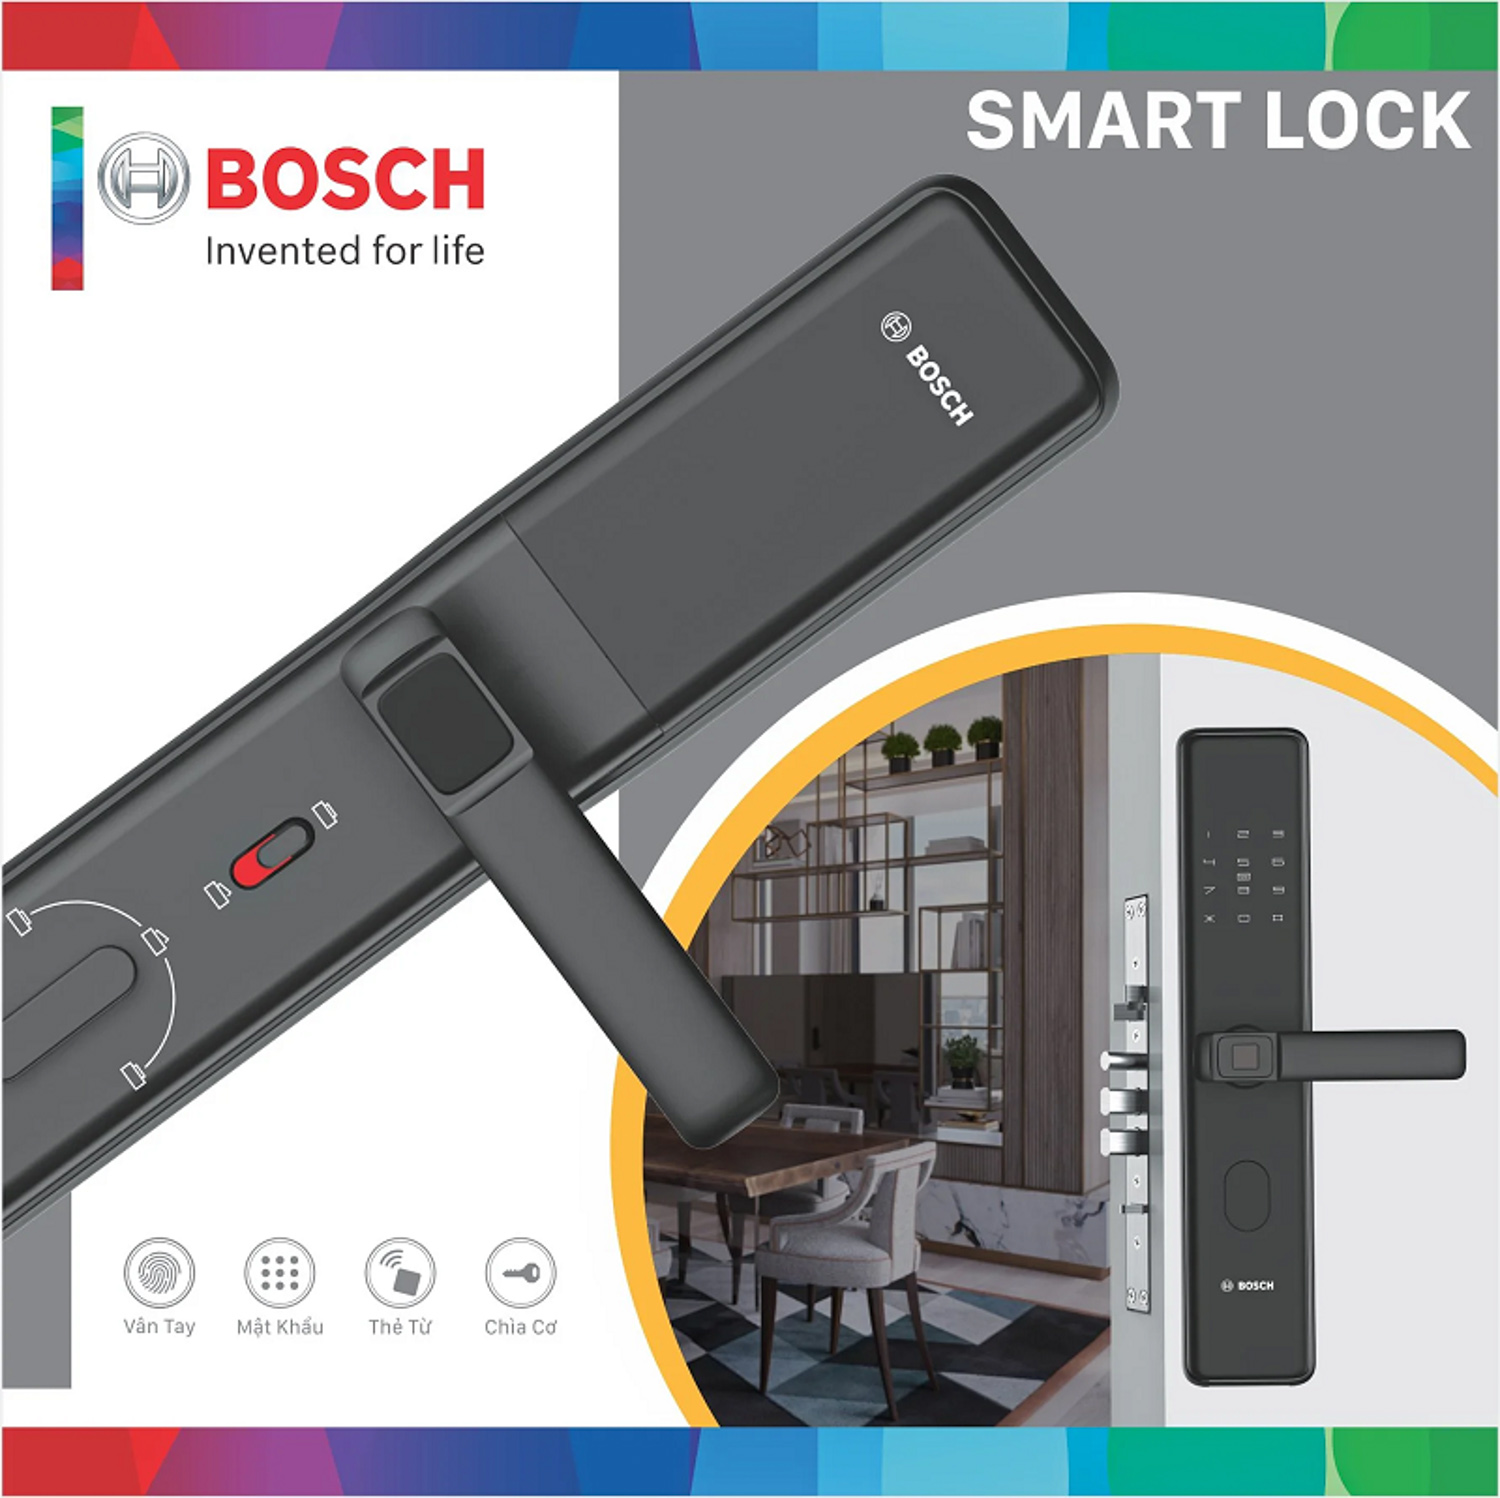 Khóa điện tử Bosch GD.ID 30B EU Black tích hợp nhiều tính năng hiện đại